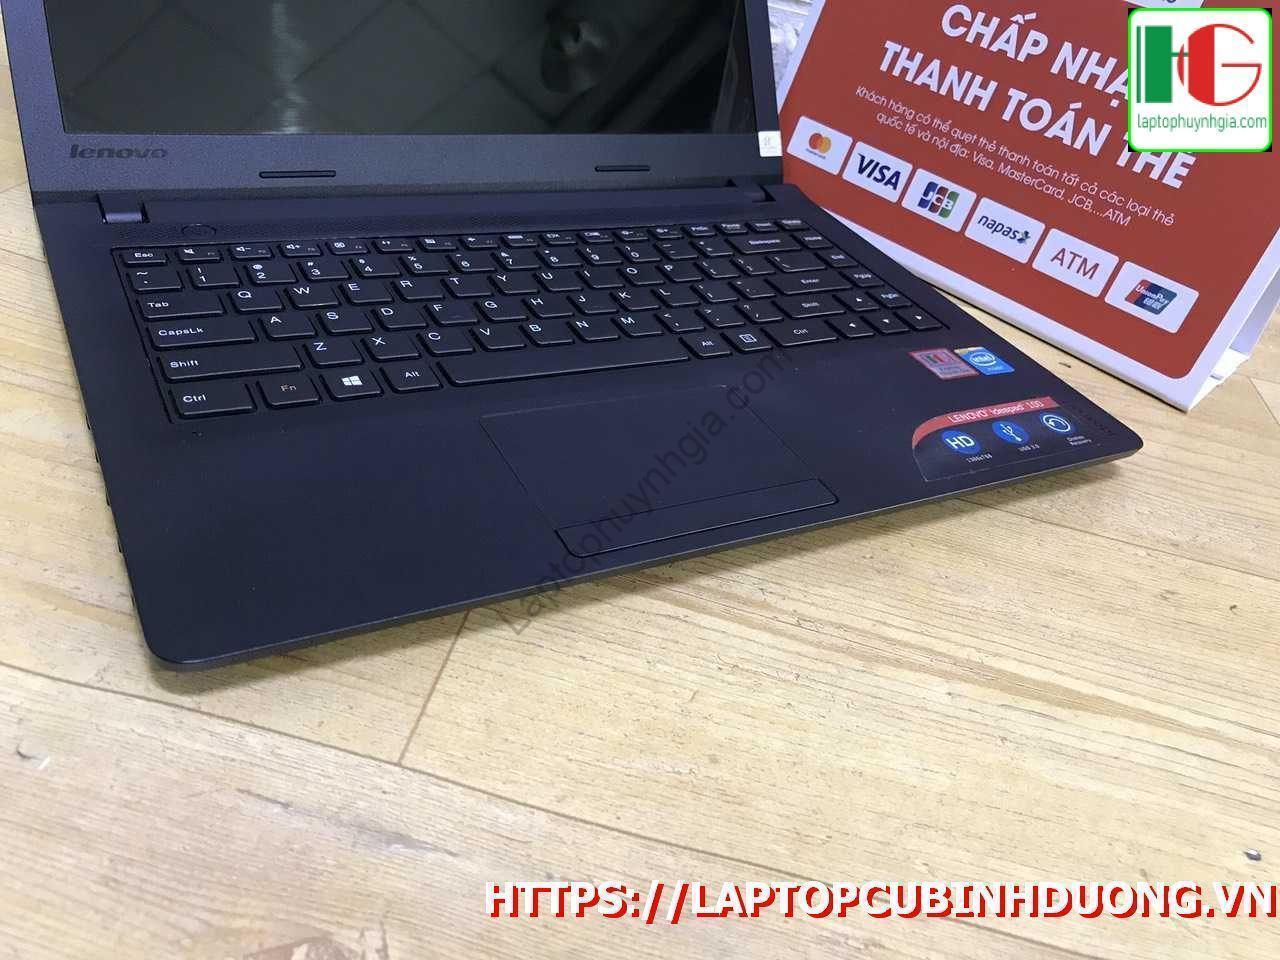 Lenovo Ipdead N2840 4g 500g Laptopcubinhduong.vn 3 [kích Thước Gốc] Result